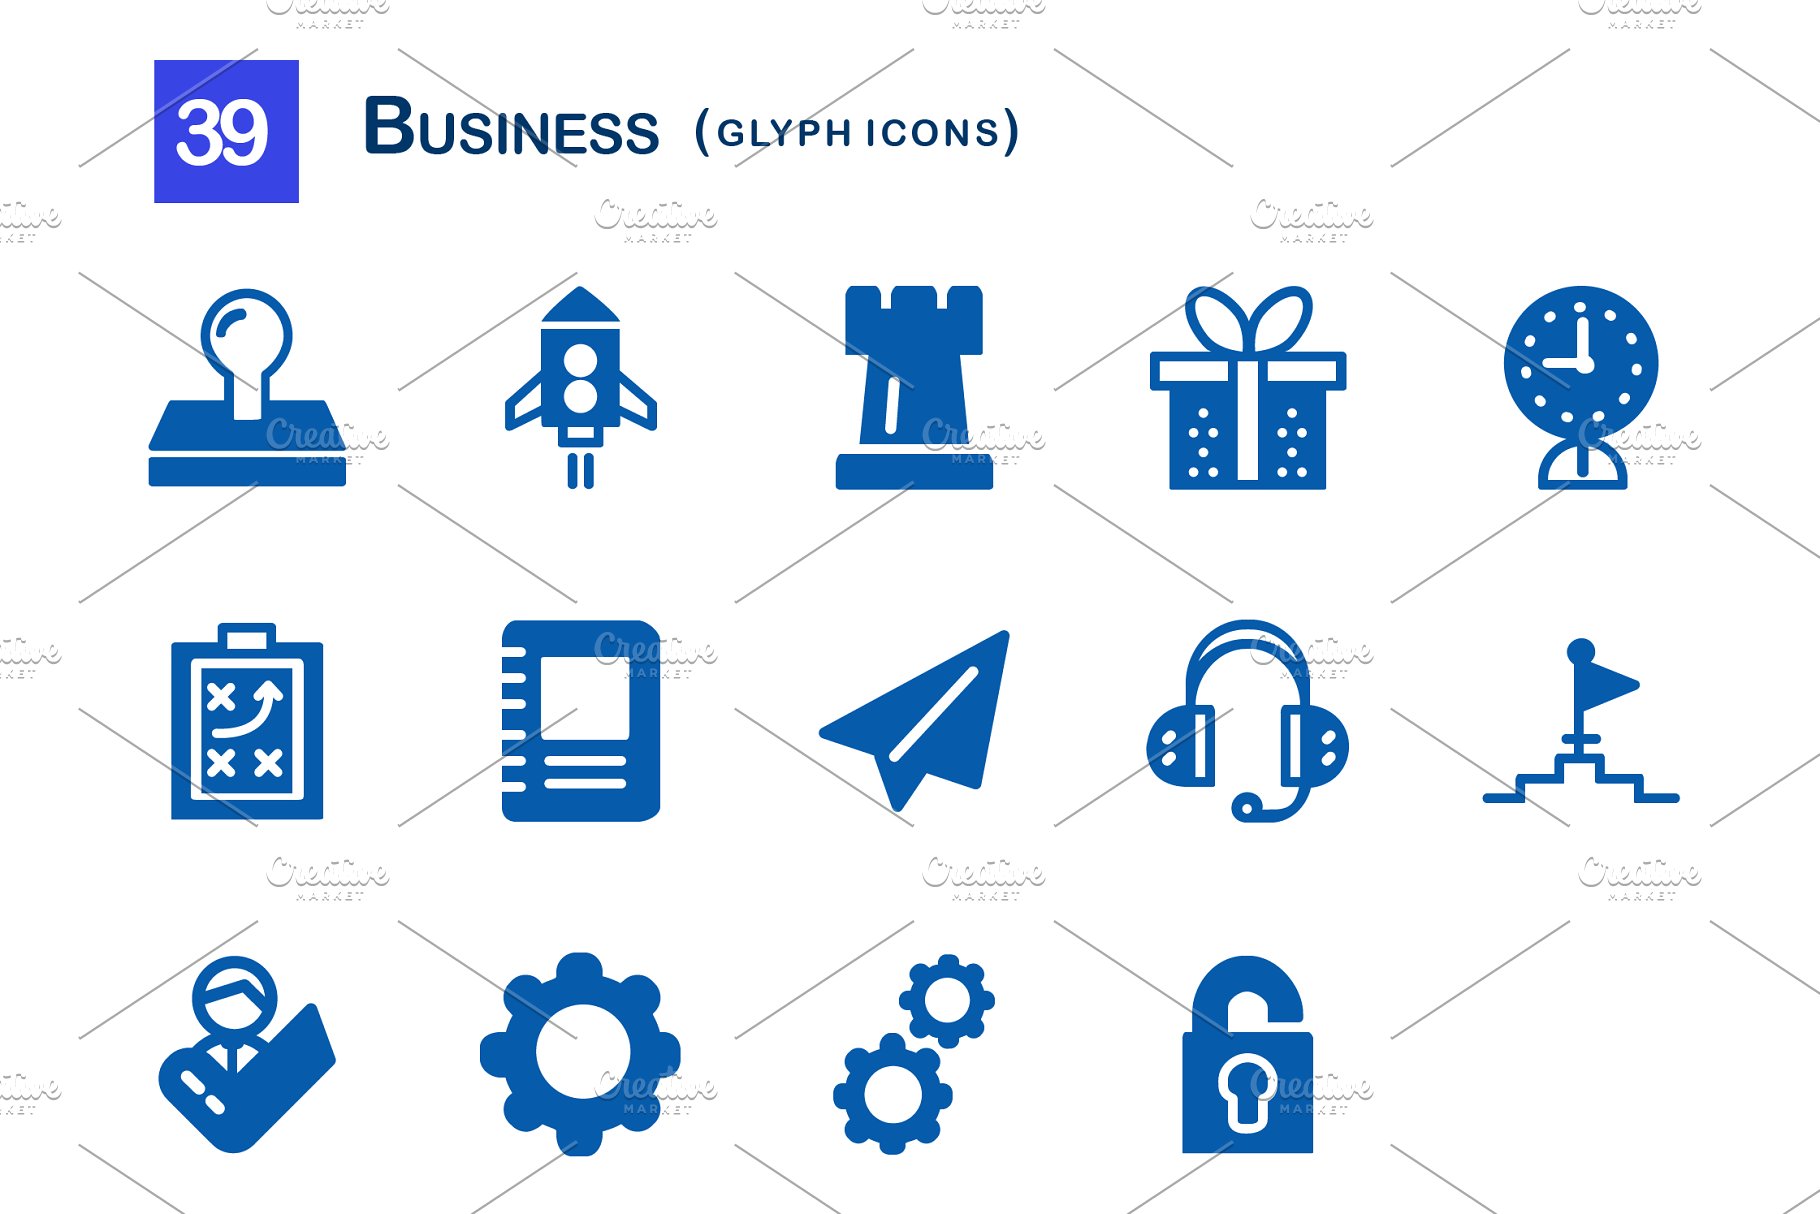 39个企业商务主题业务符号图标 39 Business Glyph Icons插图(2)